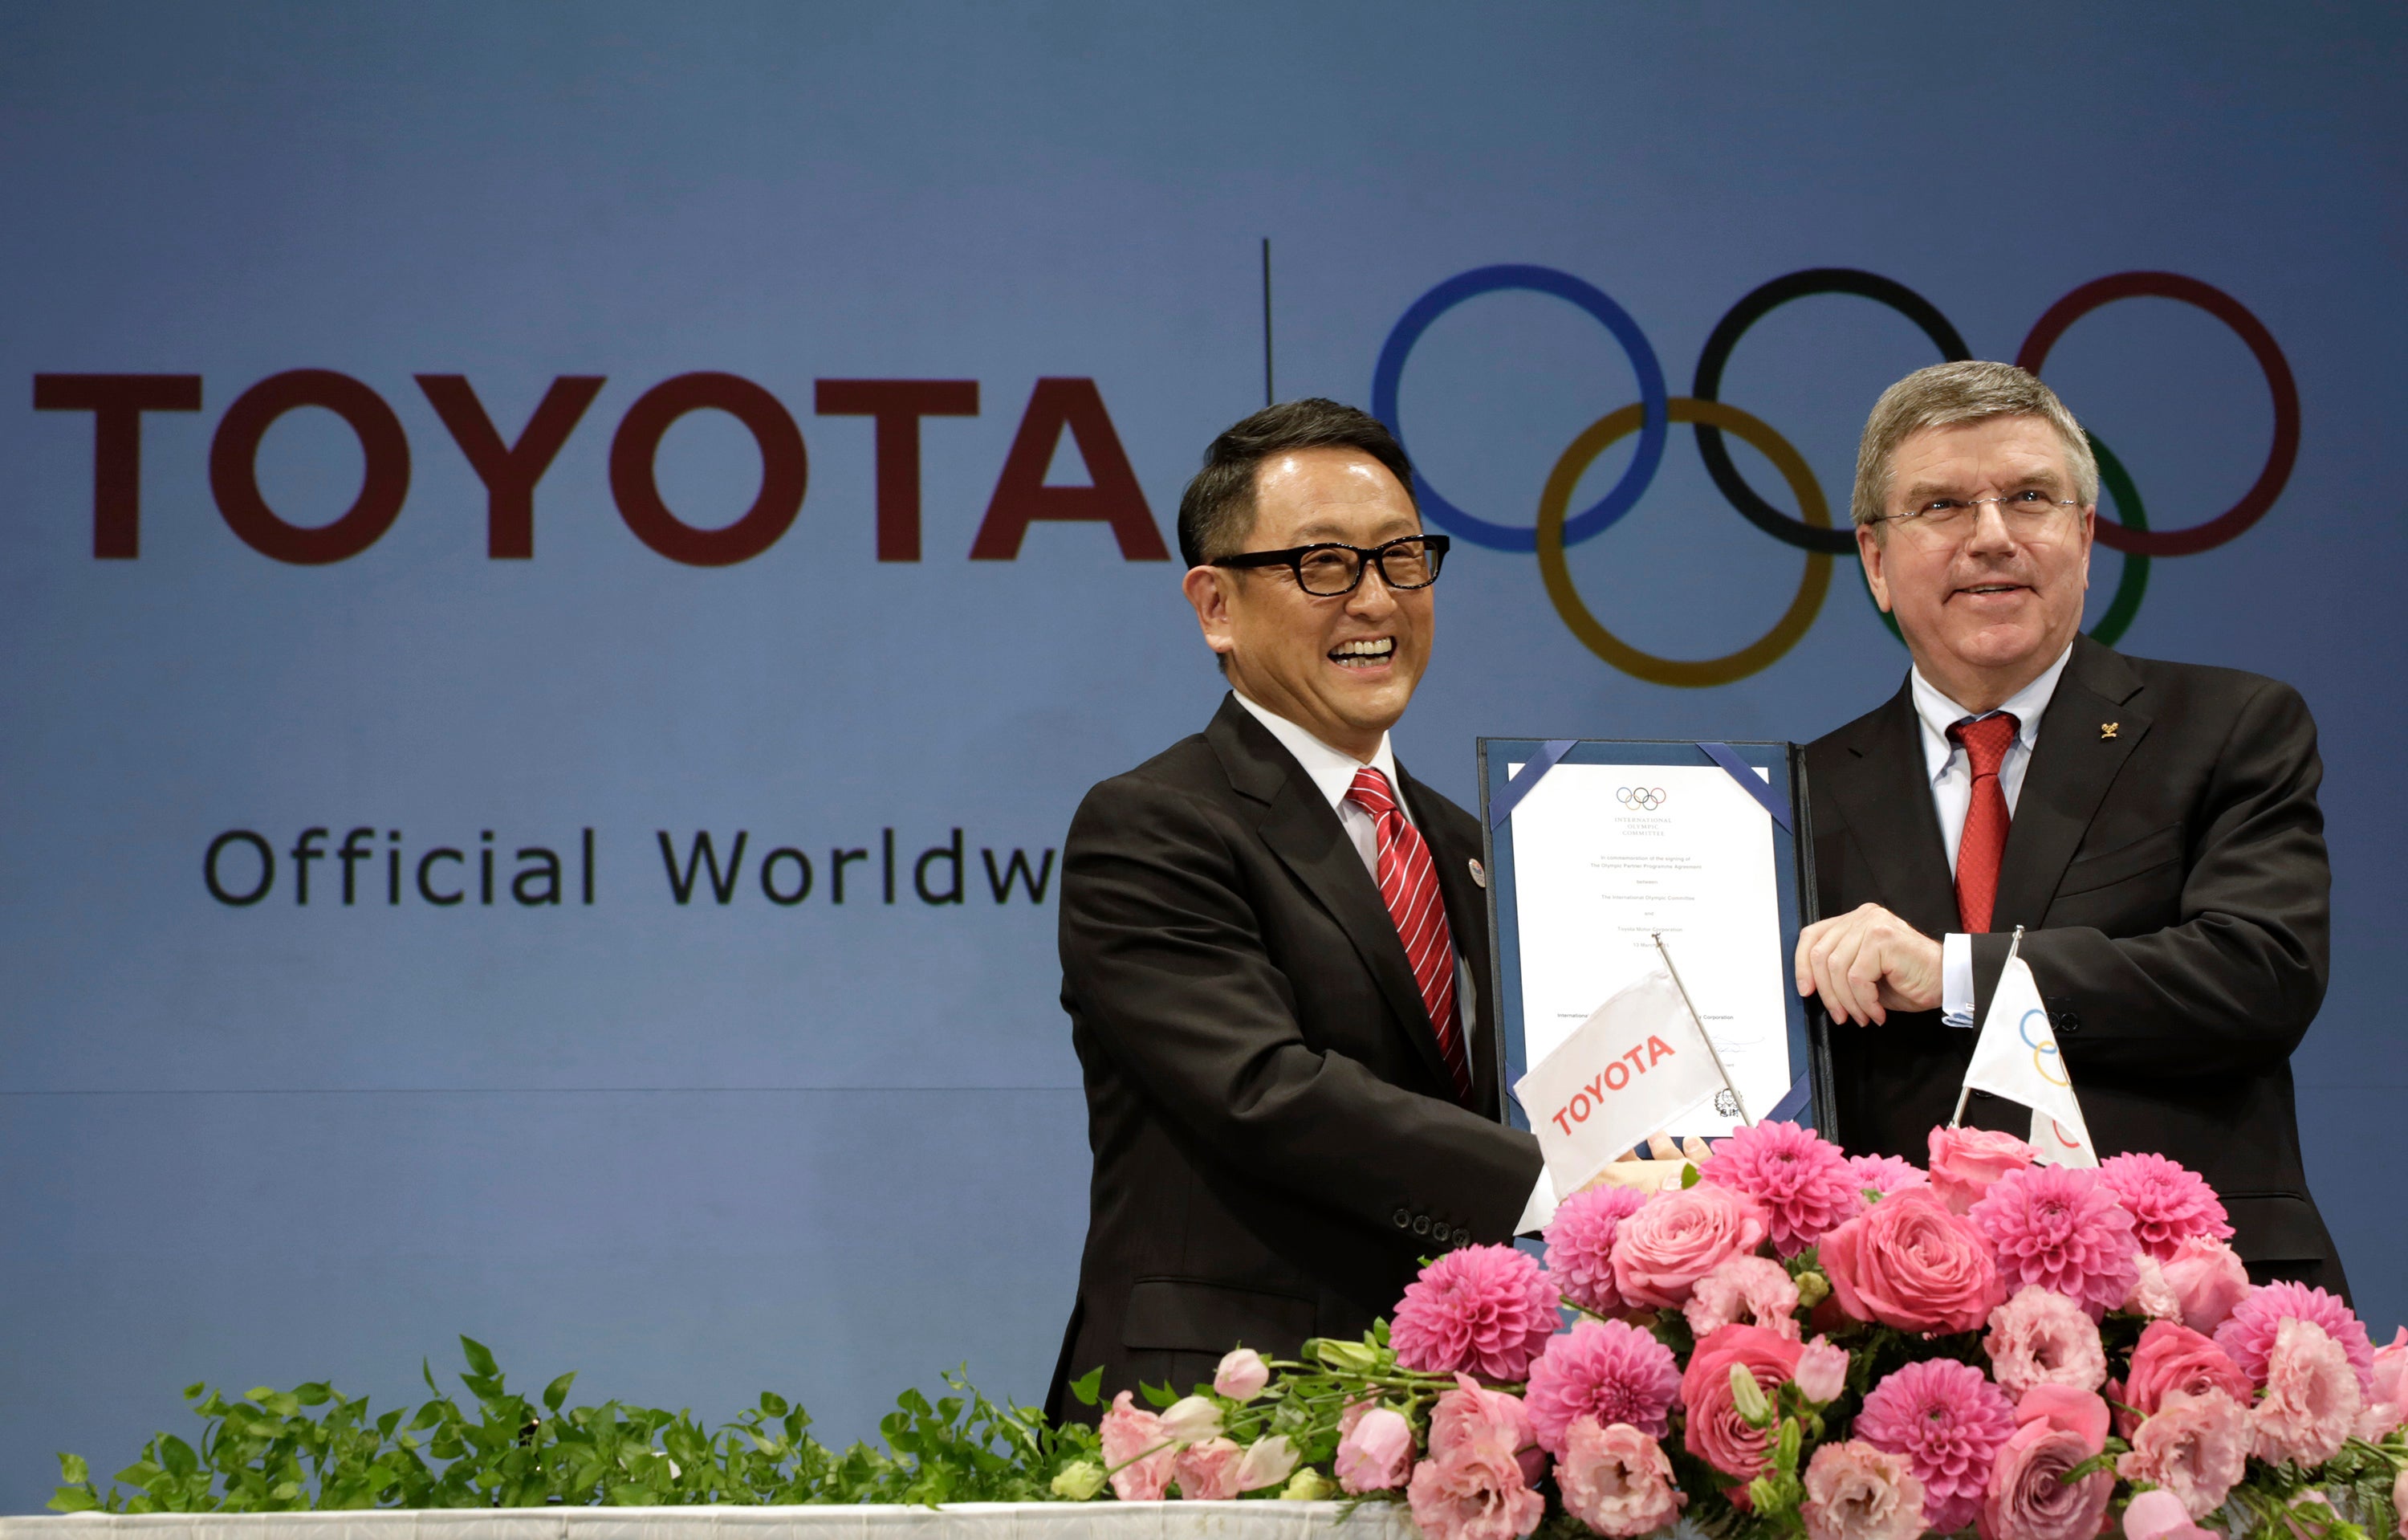 Olympics Toyota Sponsorship